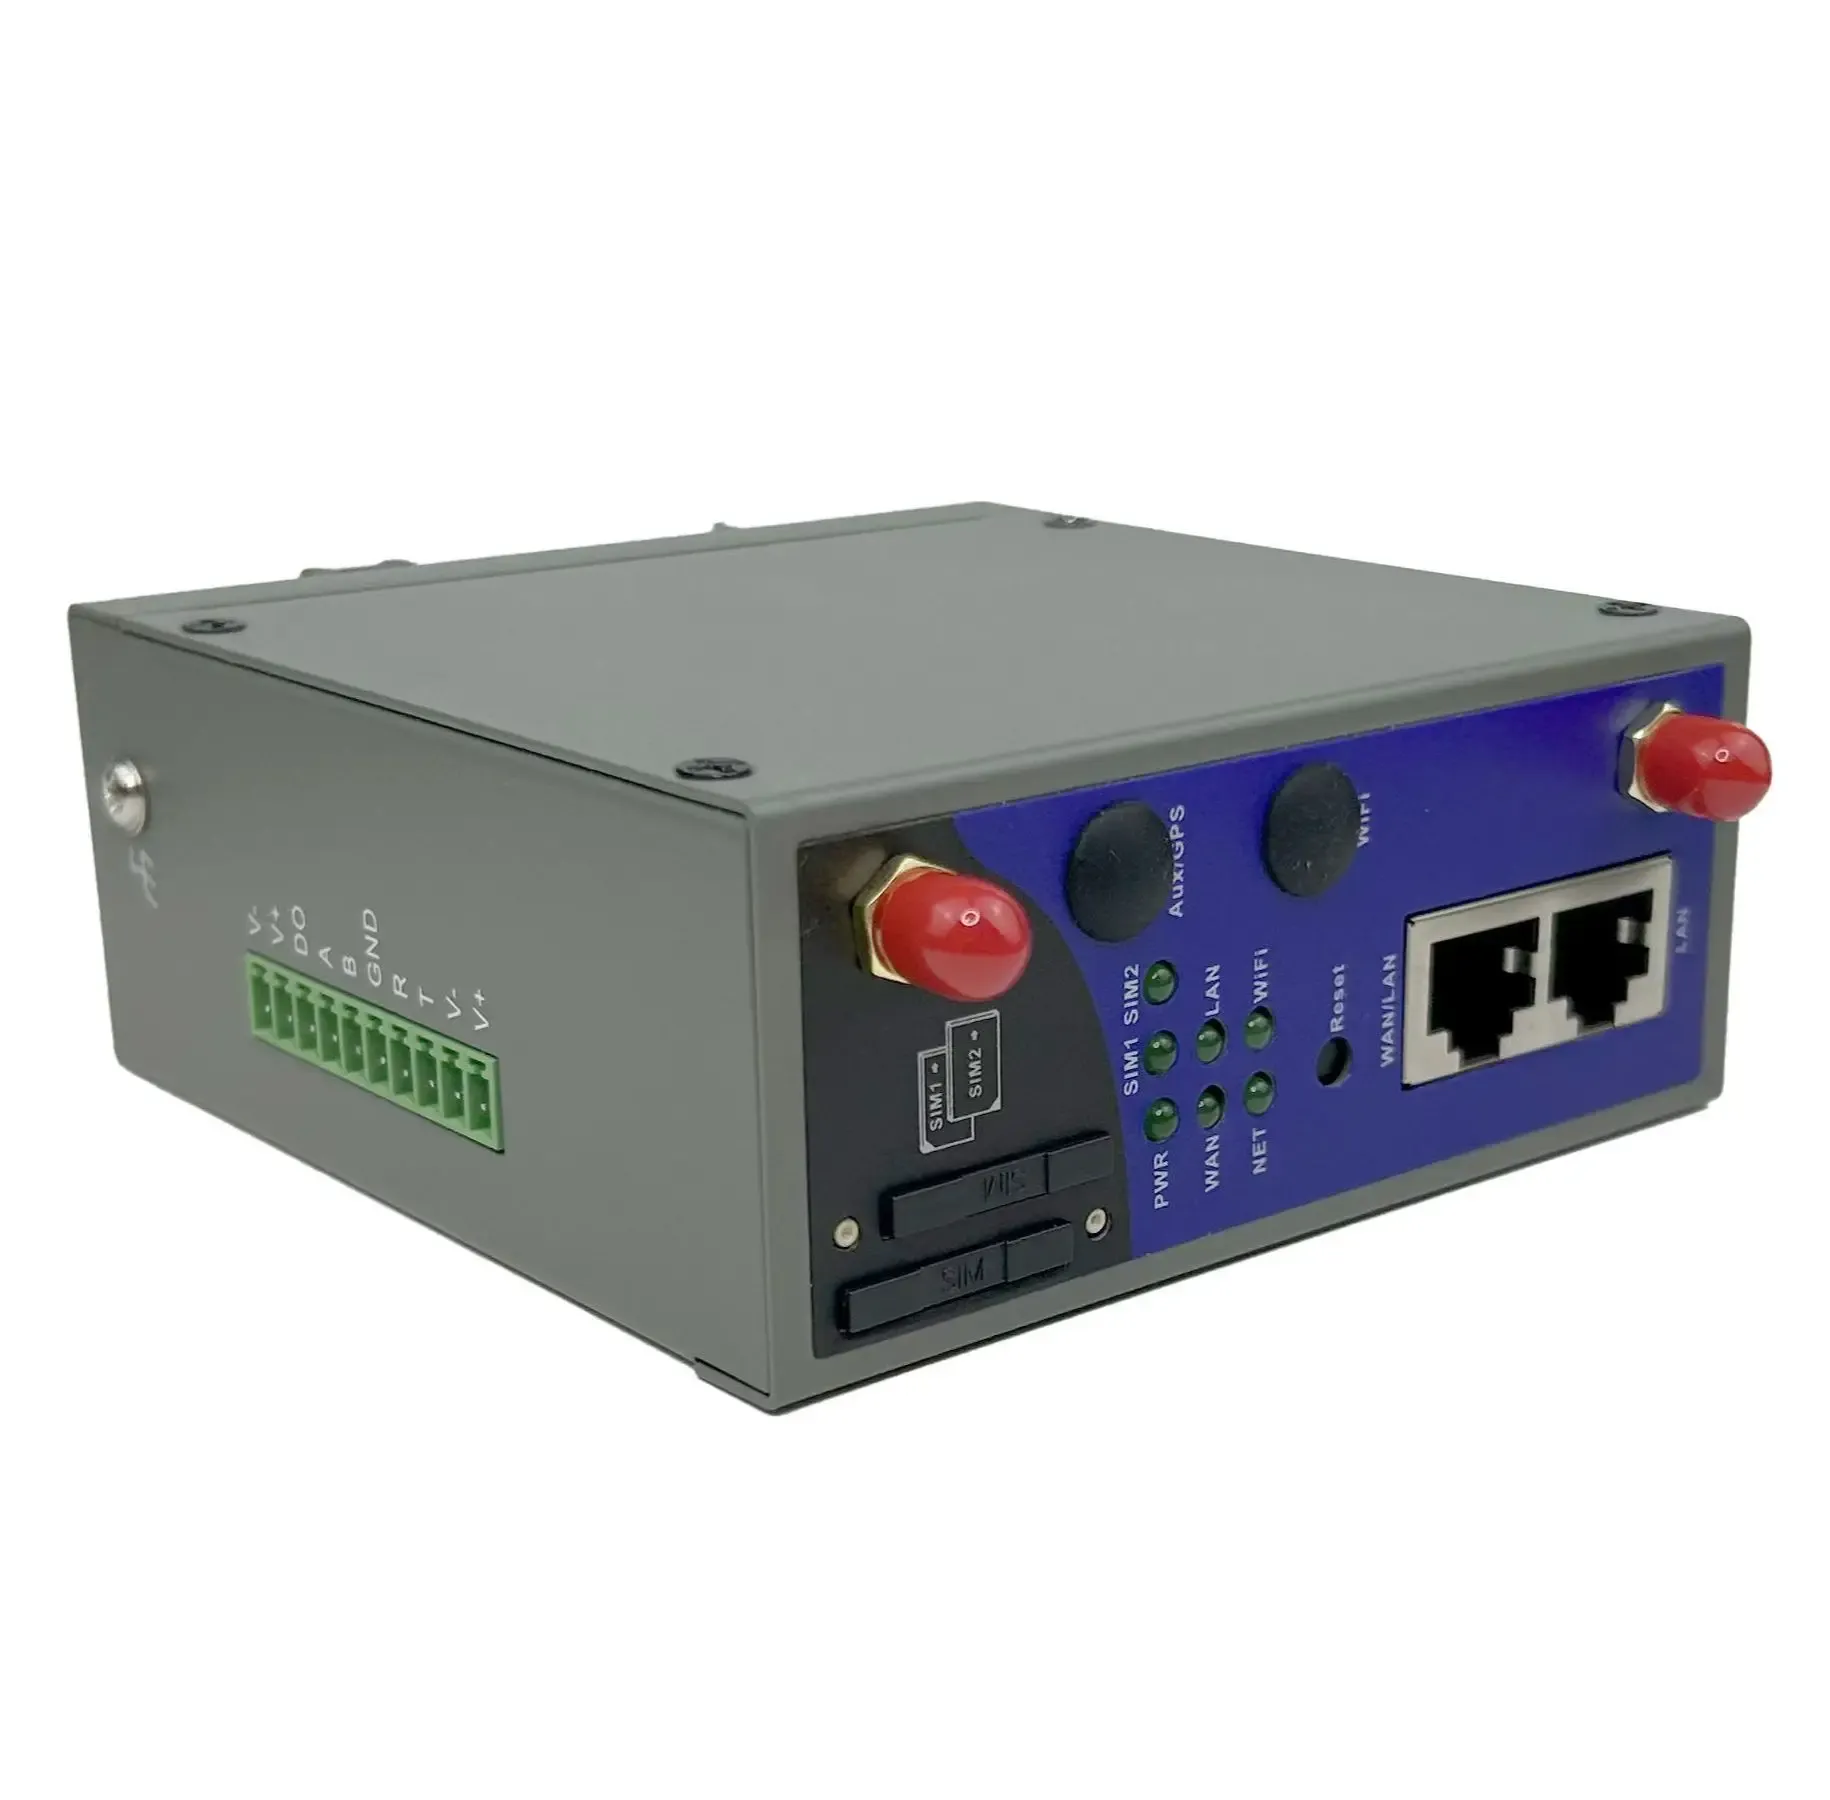 Маршрутизаторы Zlwl Industrial ZR3000 Стабильный прочный беспроводной 4G LTE Wi -Fi VPN маршрутизатор с двойной SIM -картой и RS232/RS485